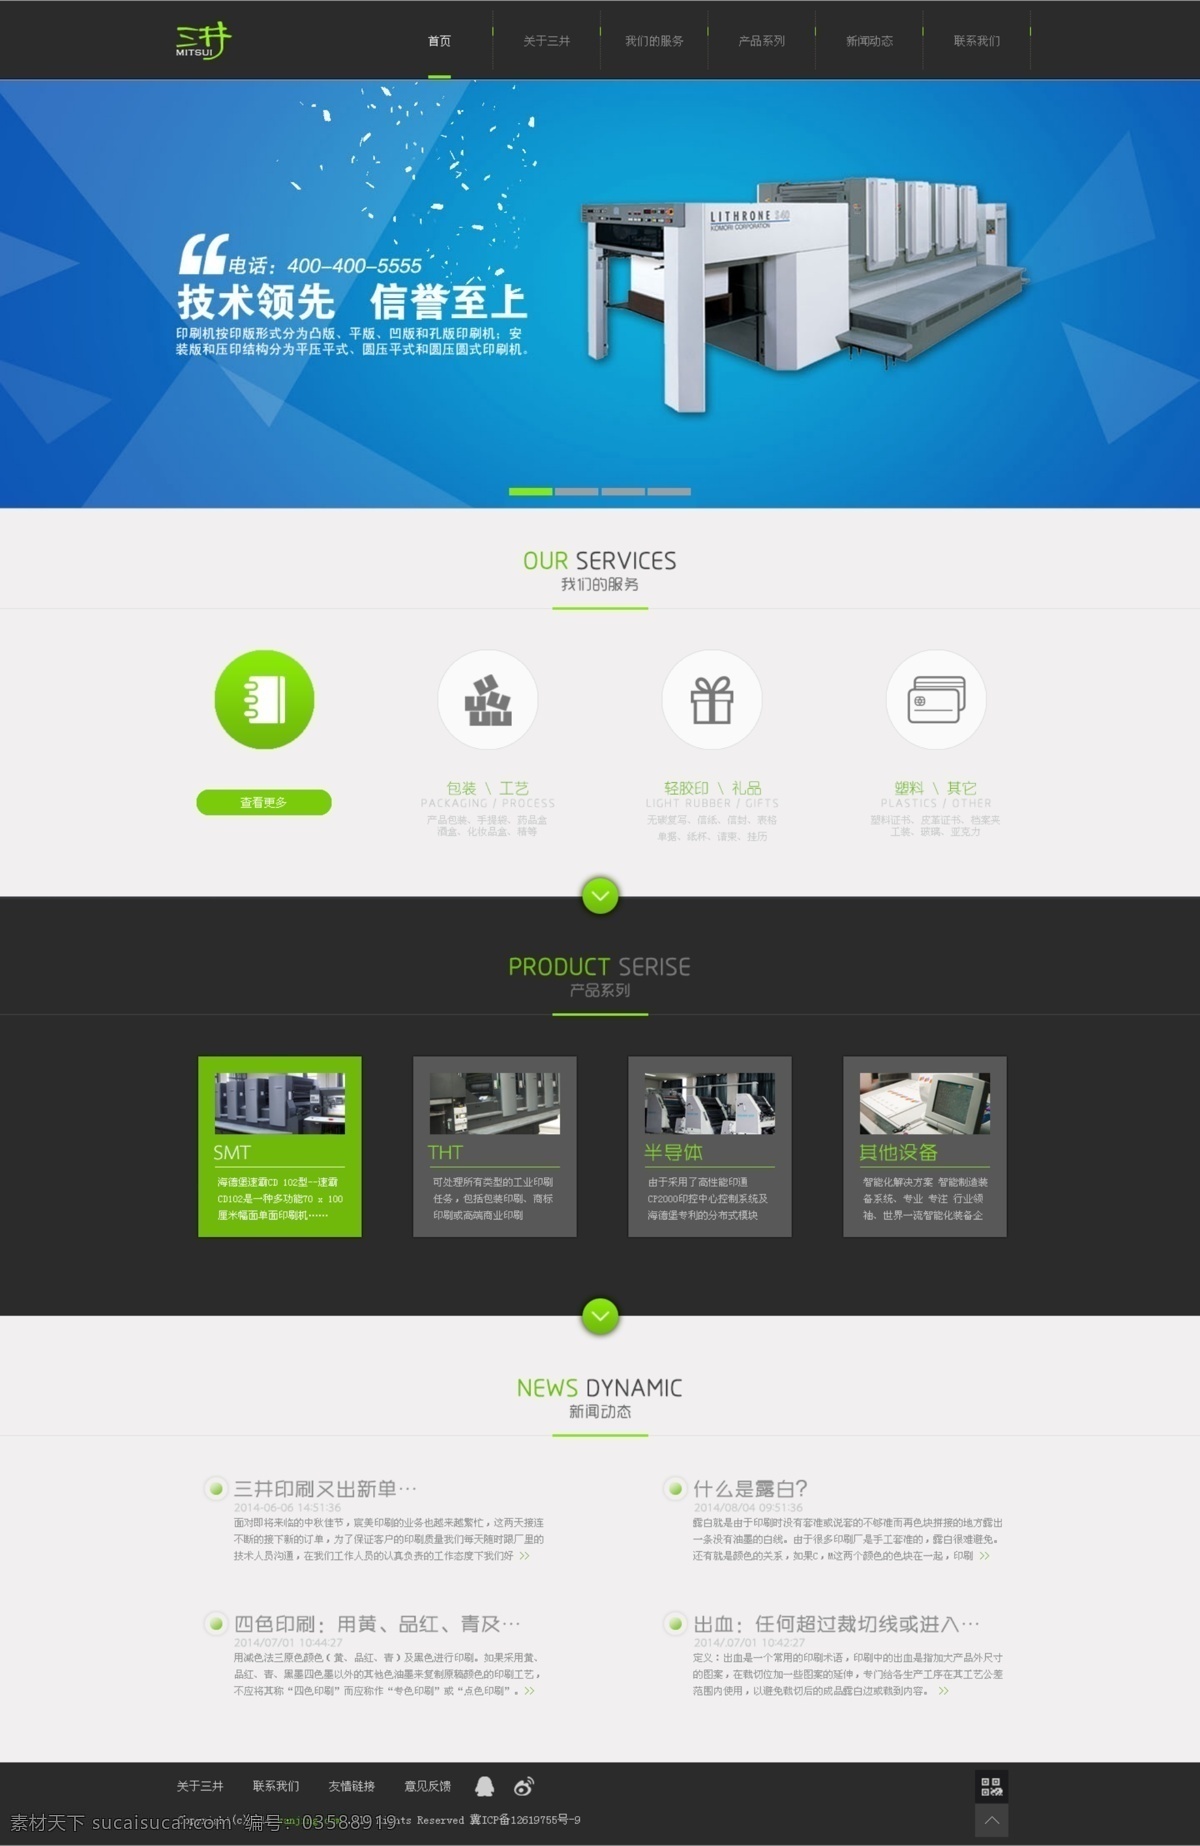 印刷设备网站 企业网站 网站 网站首页 网站设计 web 界面设计 中文模板 白色